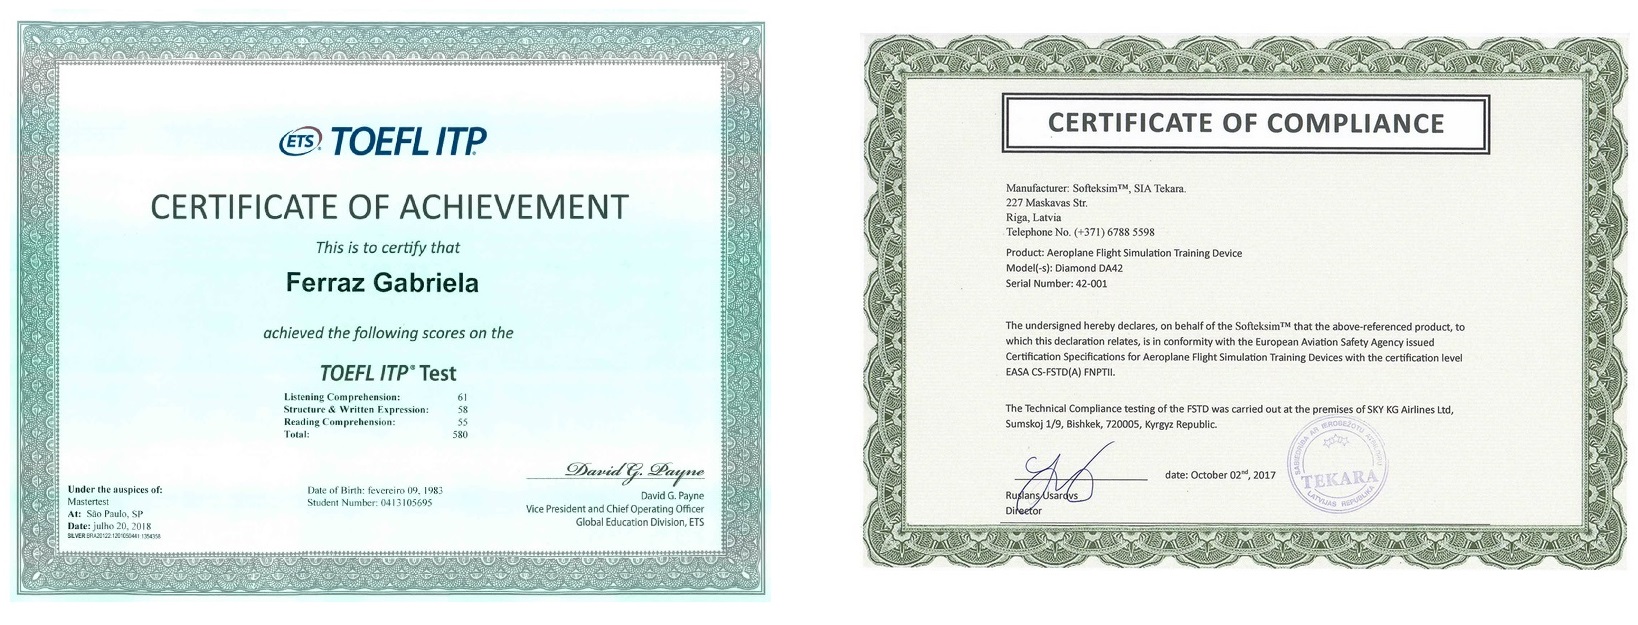 На сертификате TOEFL надпись в правом нижнем углу – это напечатанный элемент дизайна. 